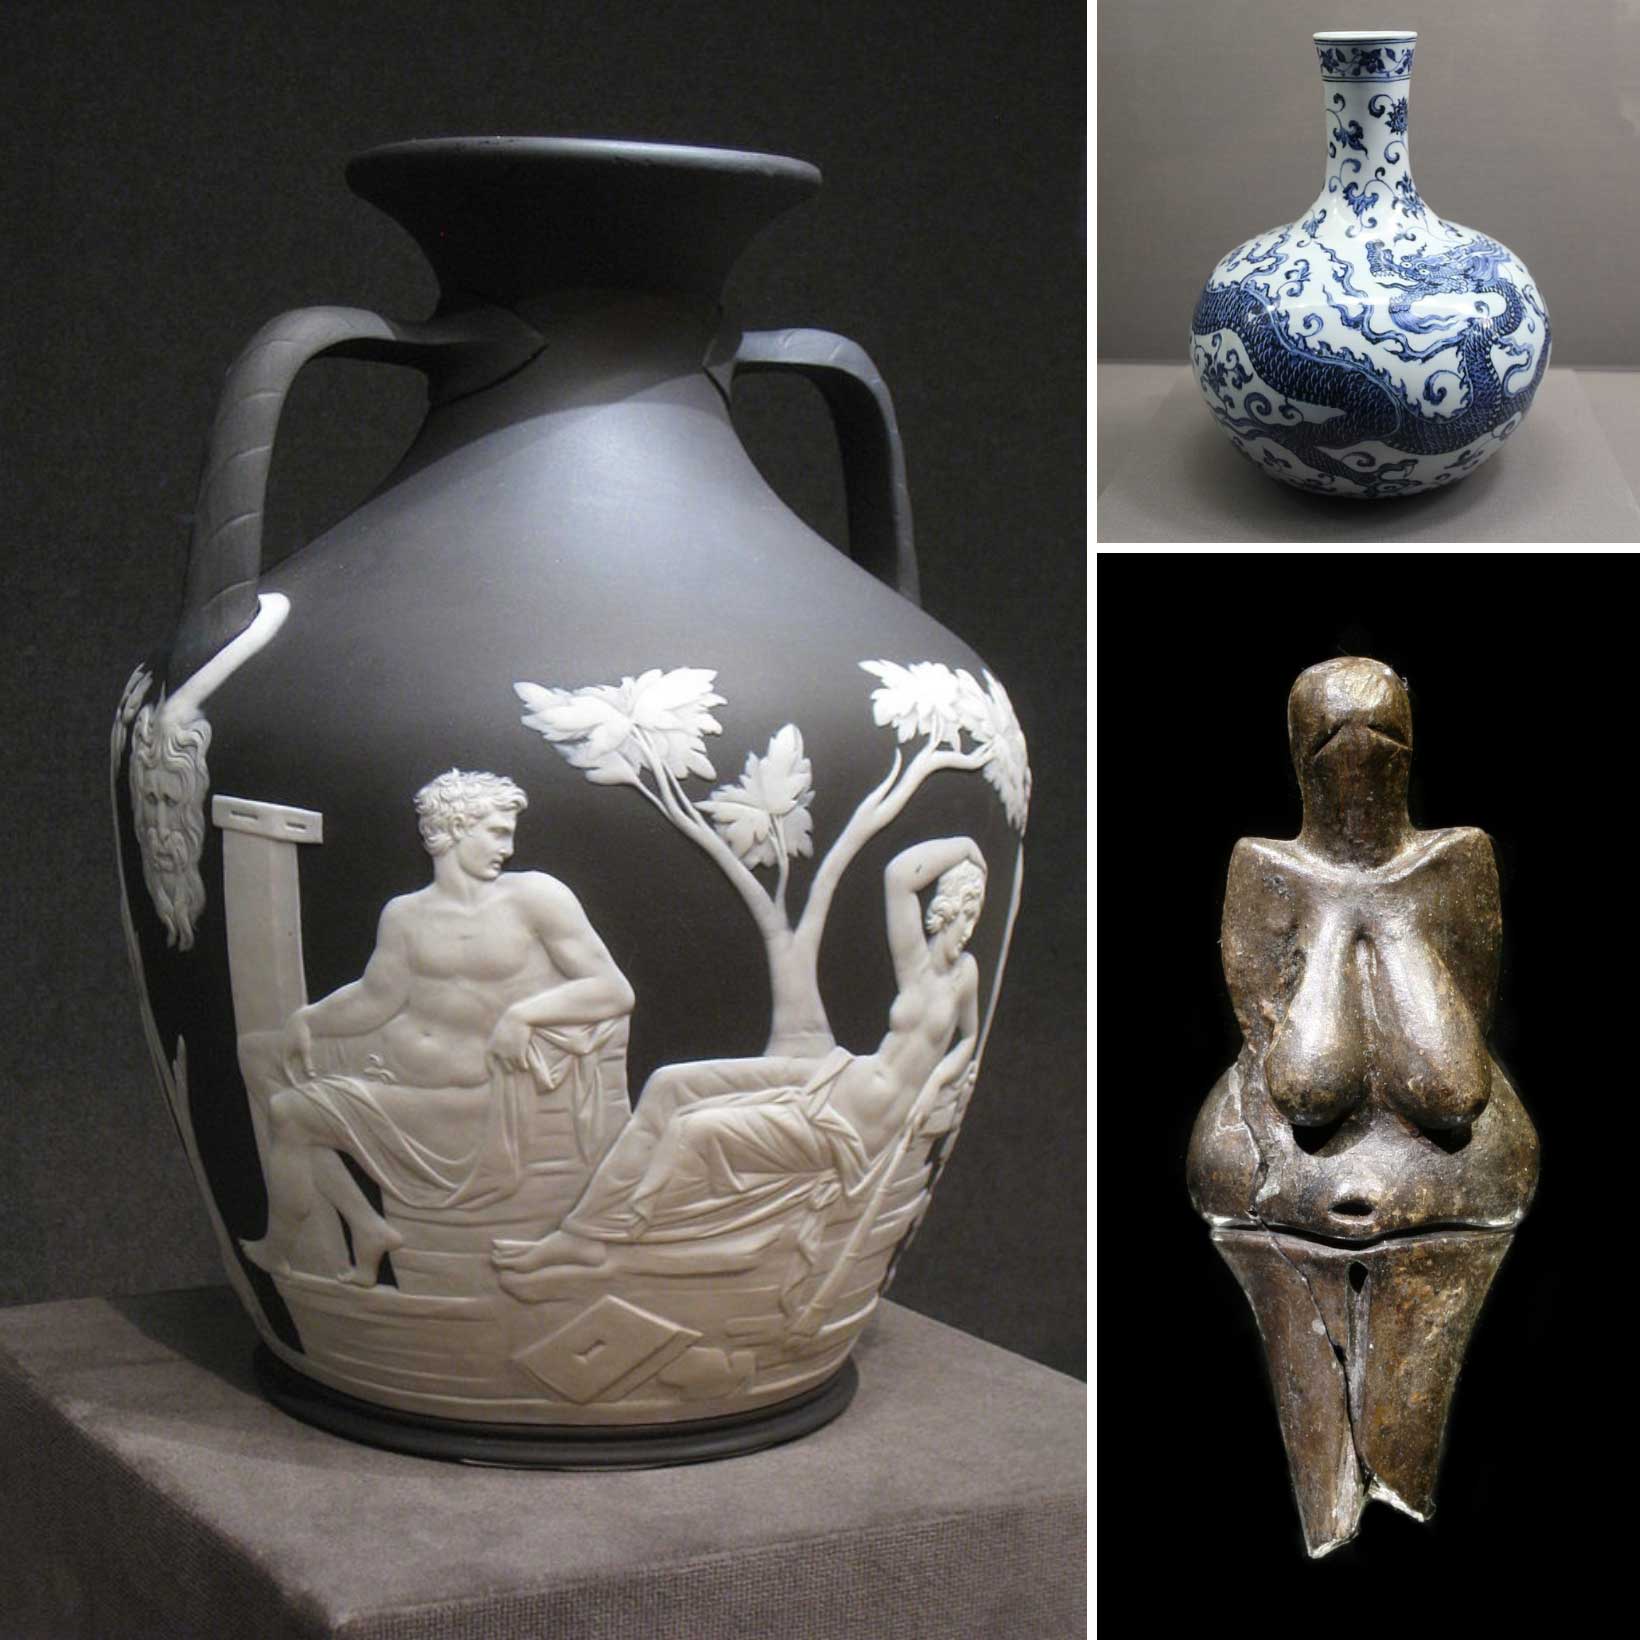 Types of ceramics in art